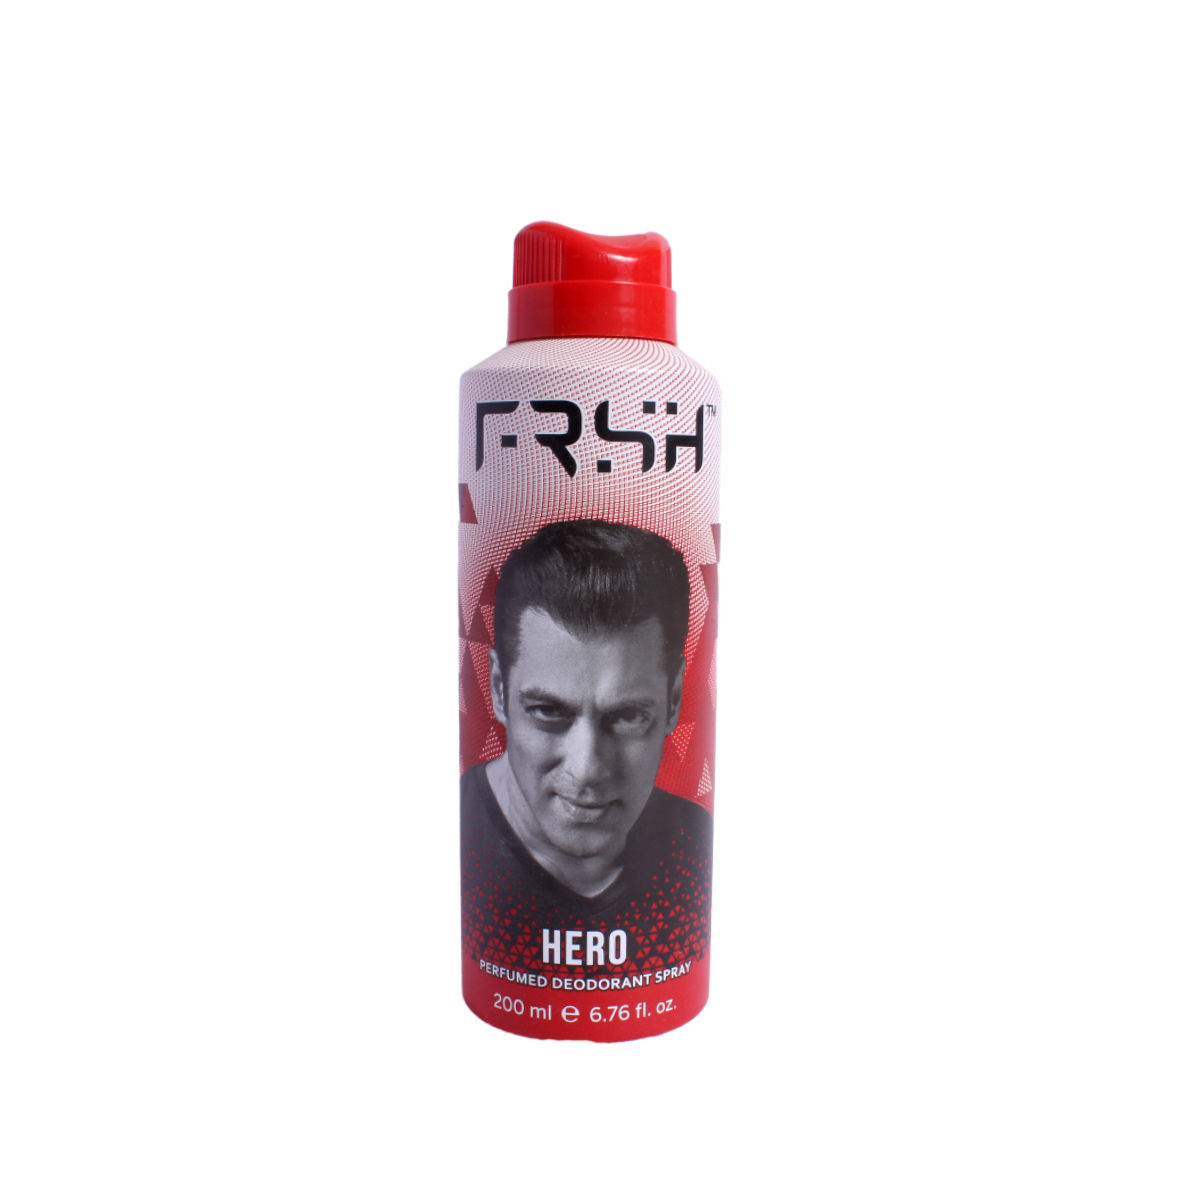 Buy Frsh Hero Perfumed Deodorant Body Spray, 200 ml Online